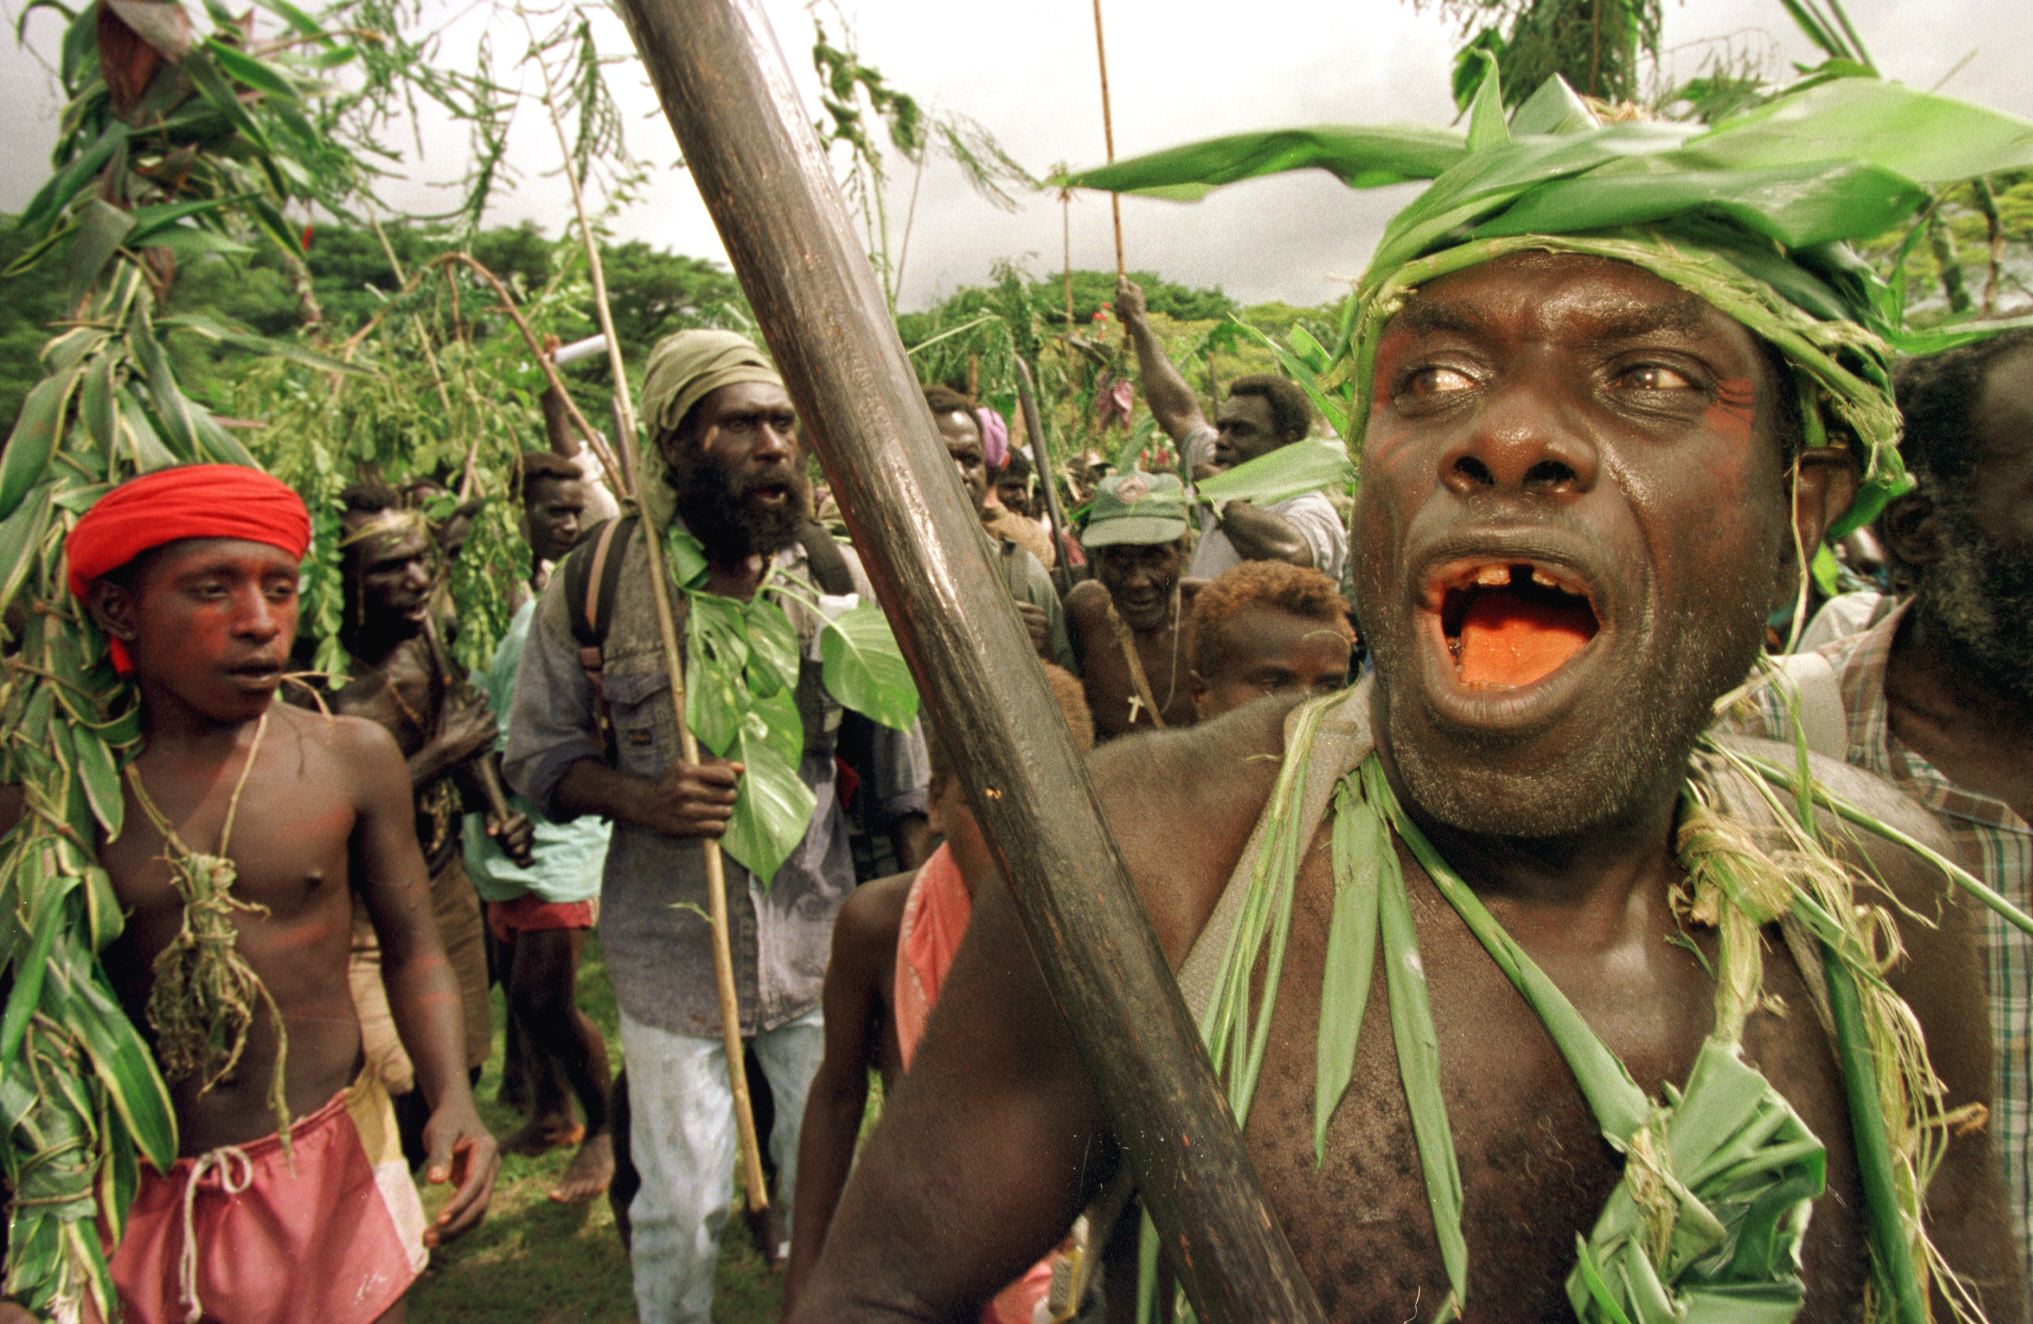 Bougainville guerrilla fighters